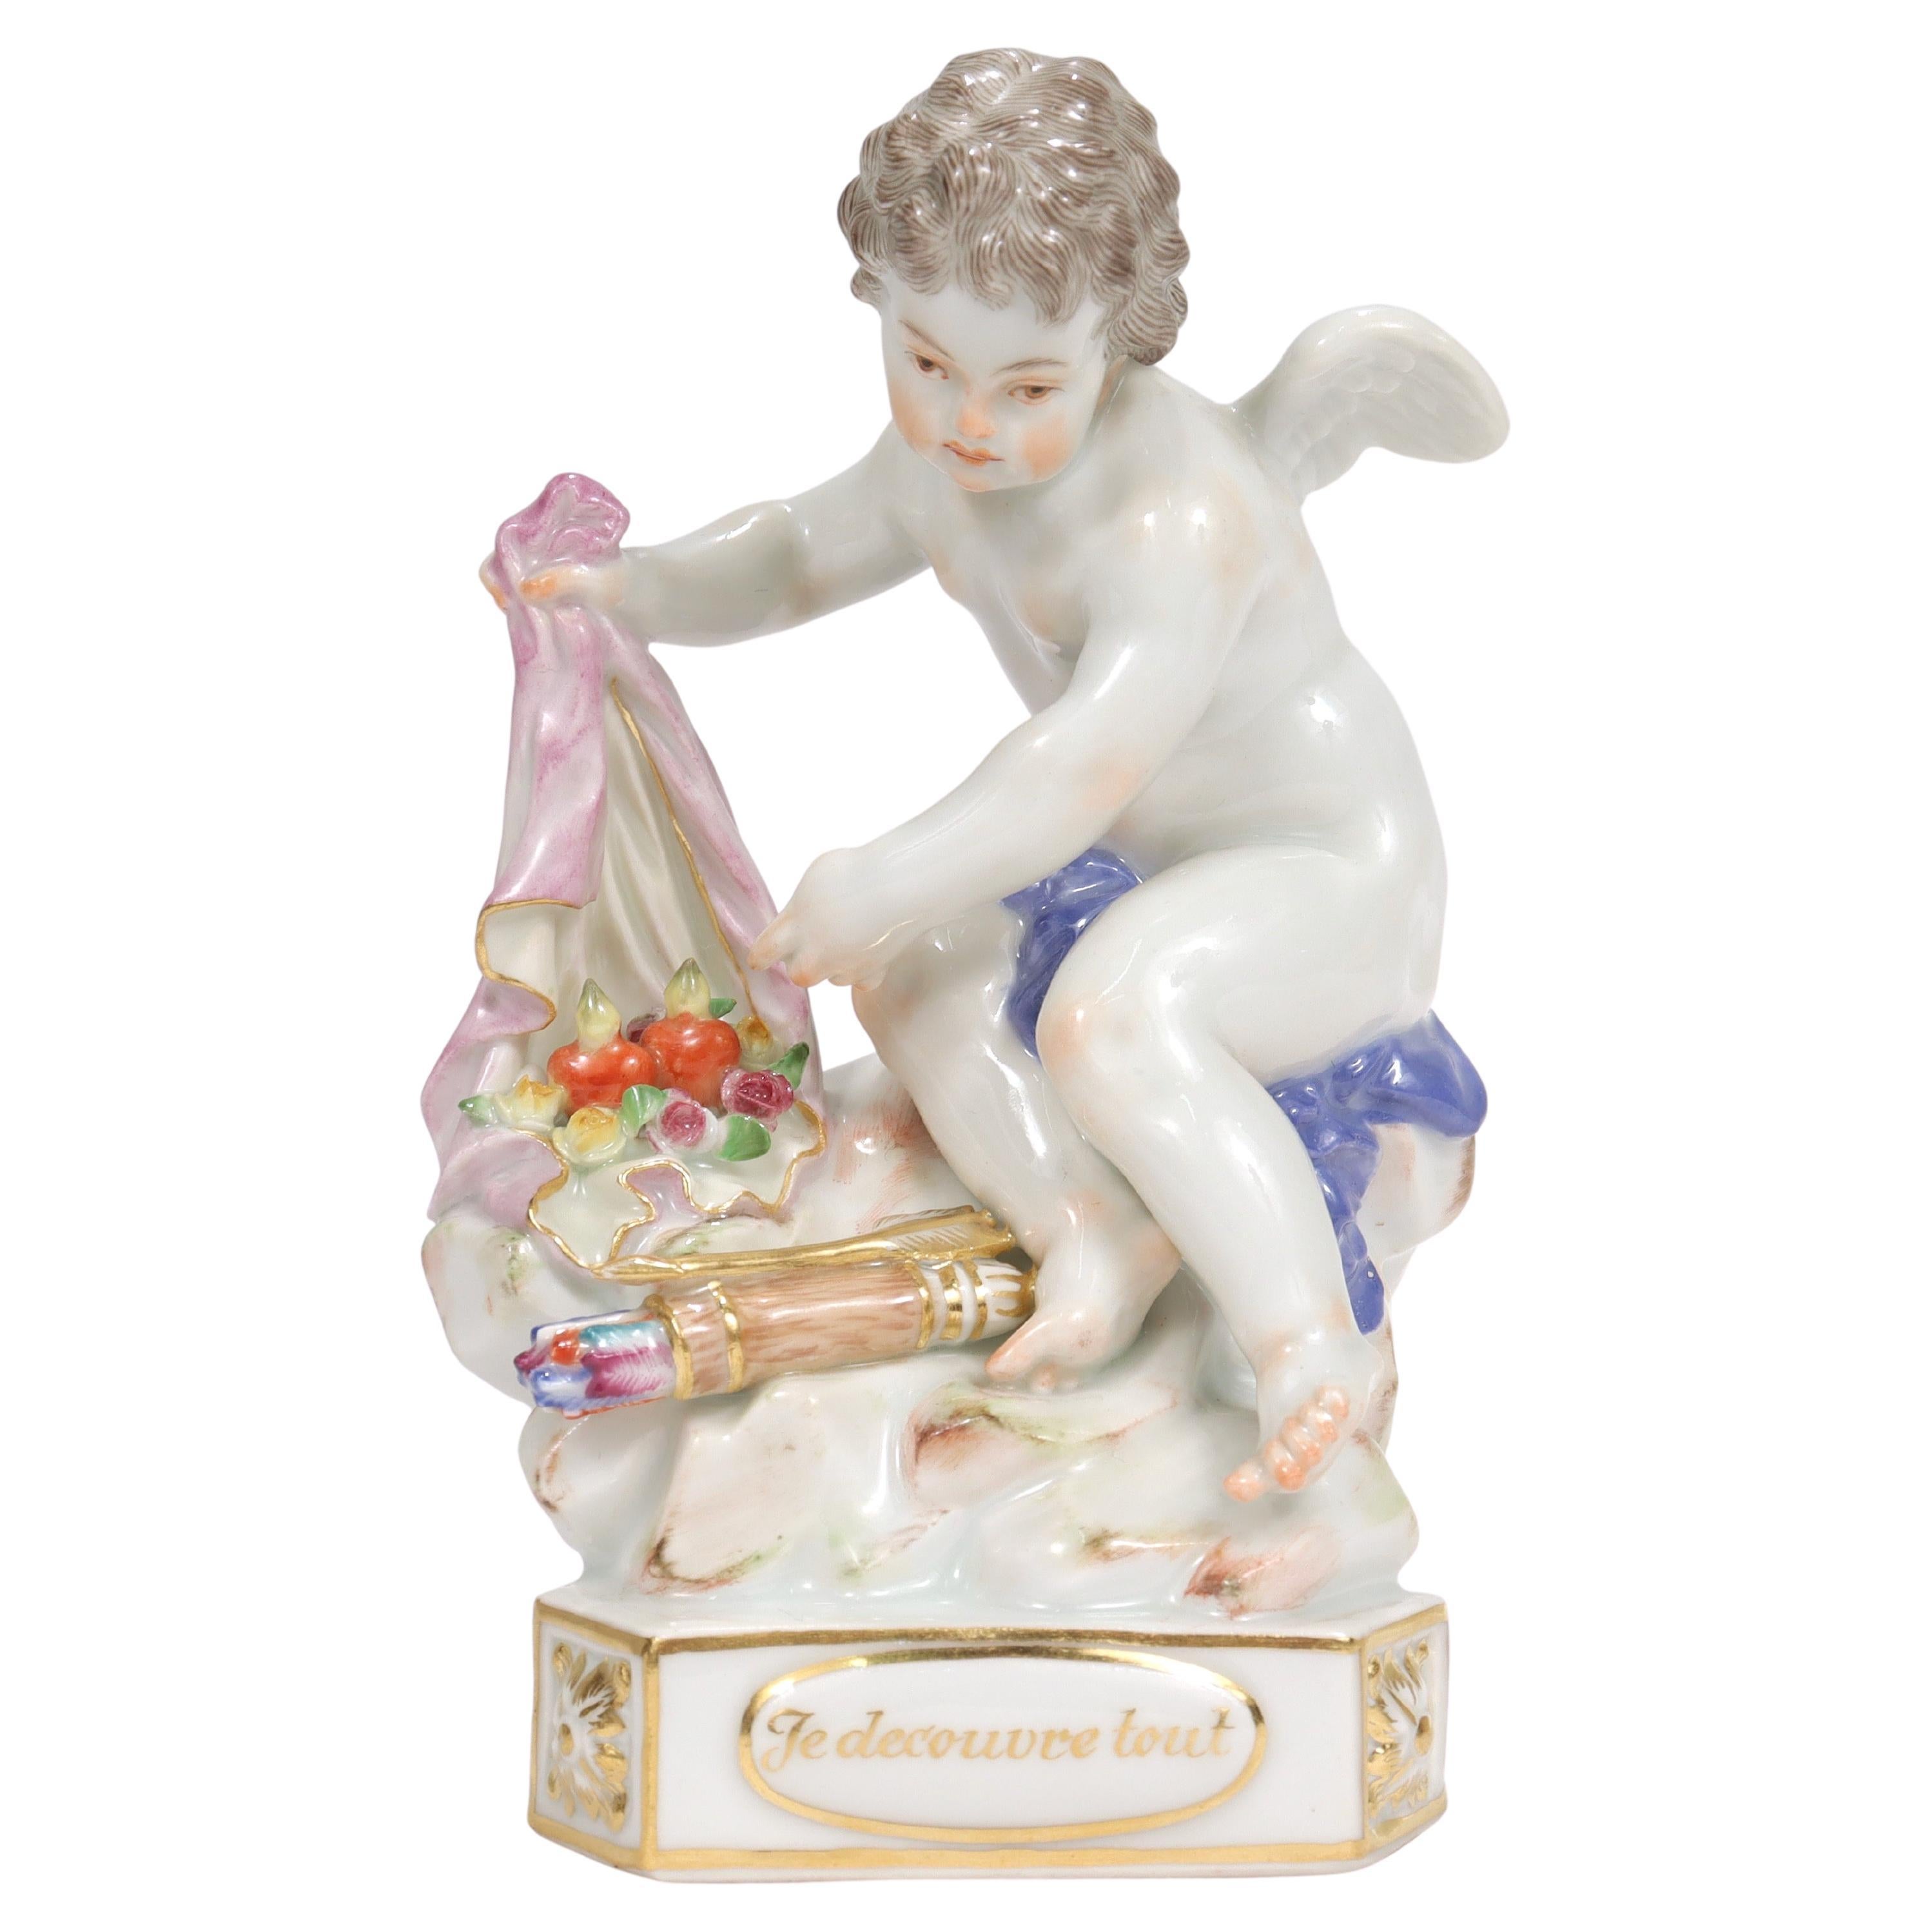 Ancienne figurine de chérubin en porcelaine de Meissen Motto « Je decouvre tout » Modèle F13 en vente